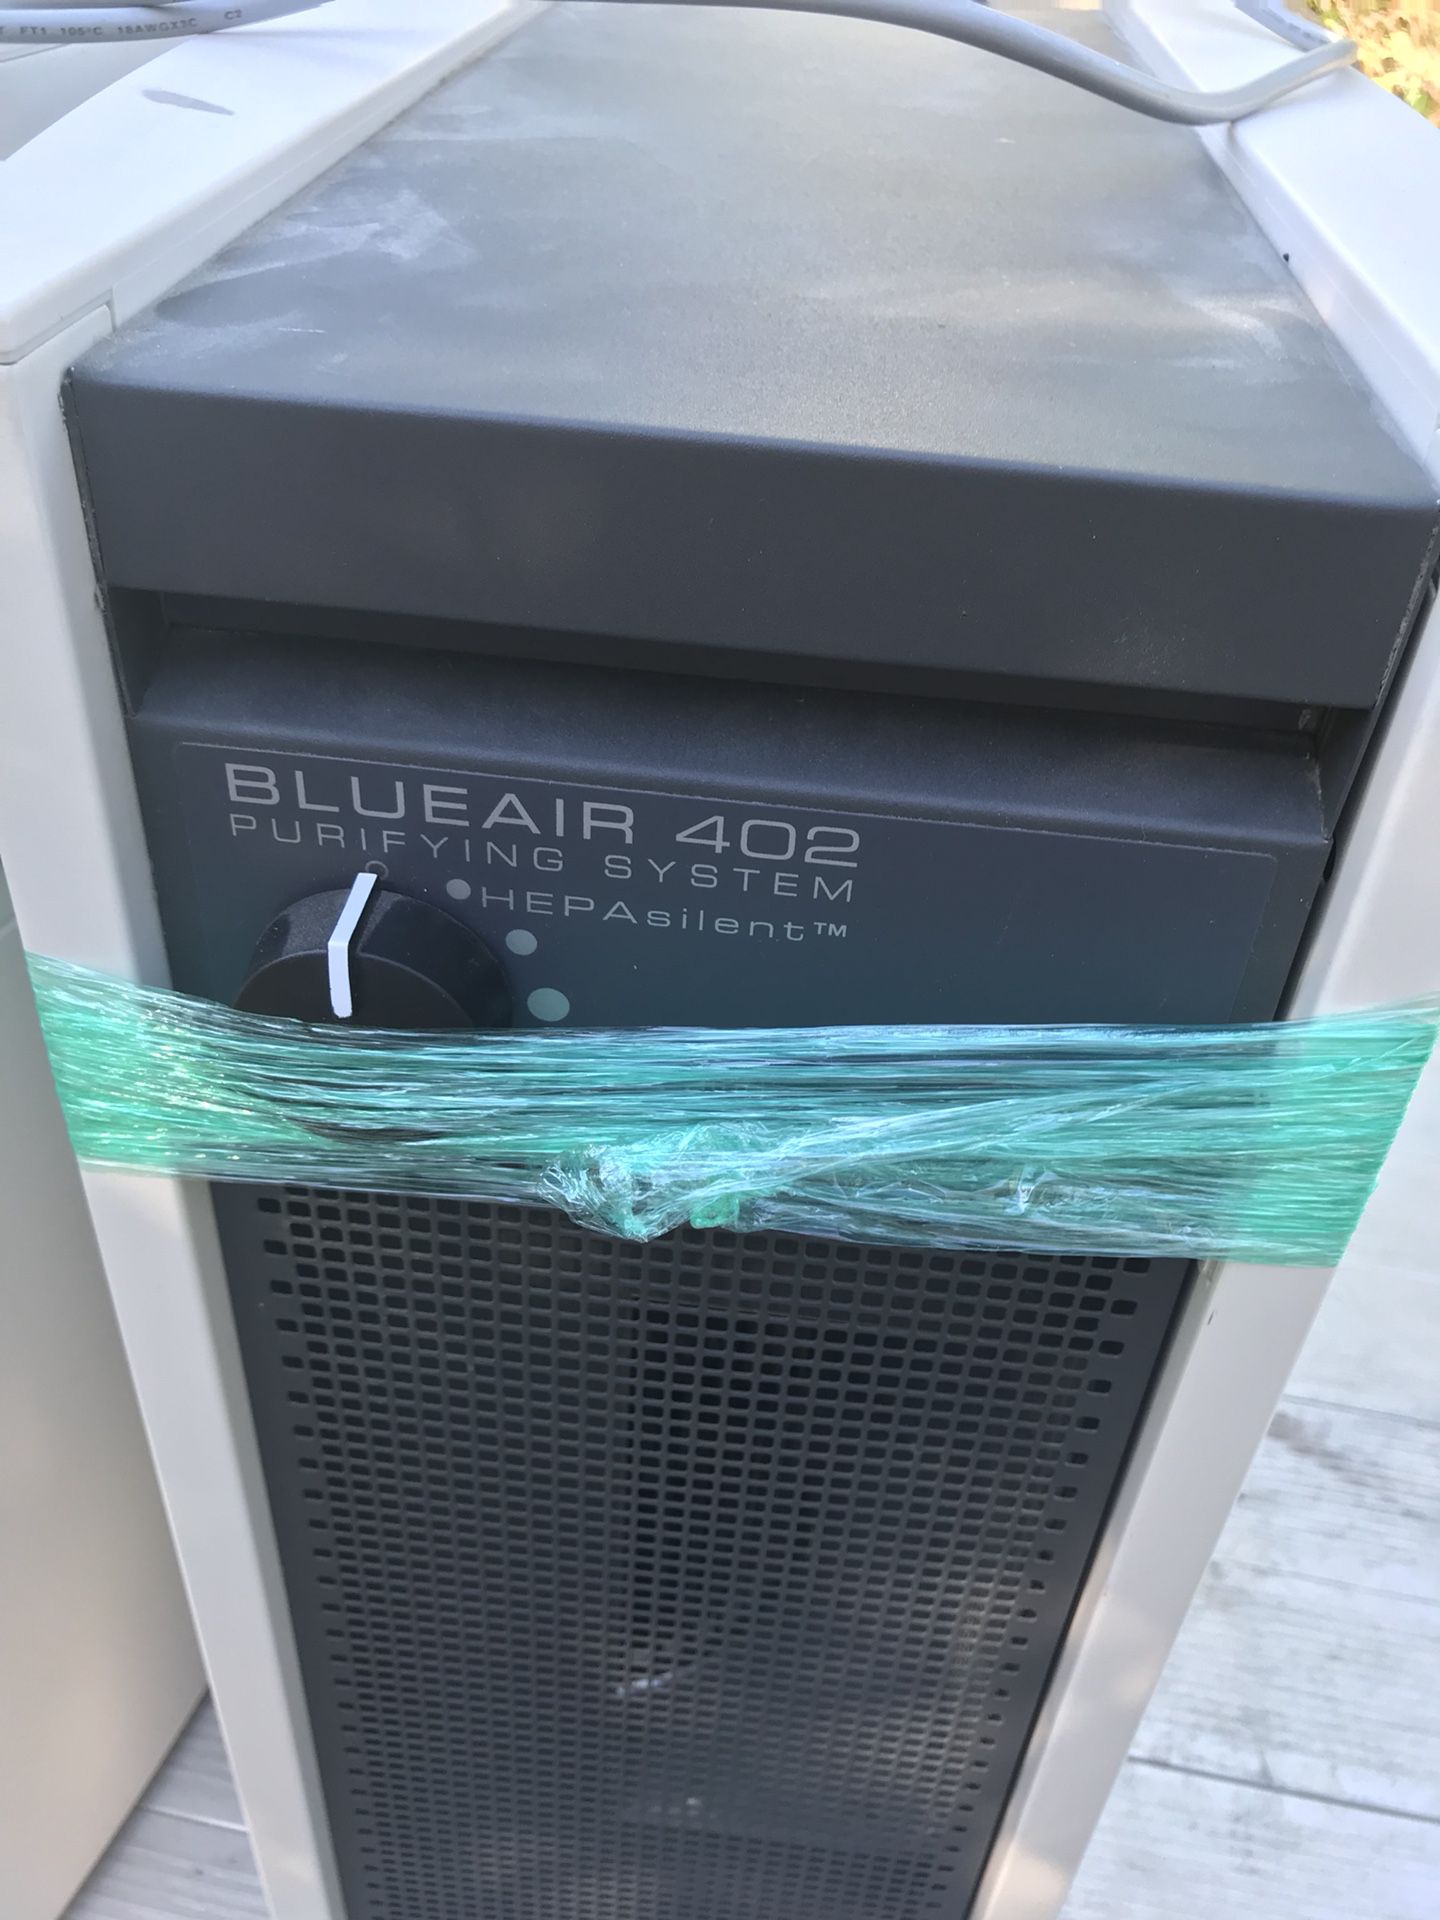 Blue air purifier 402